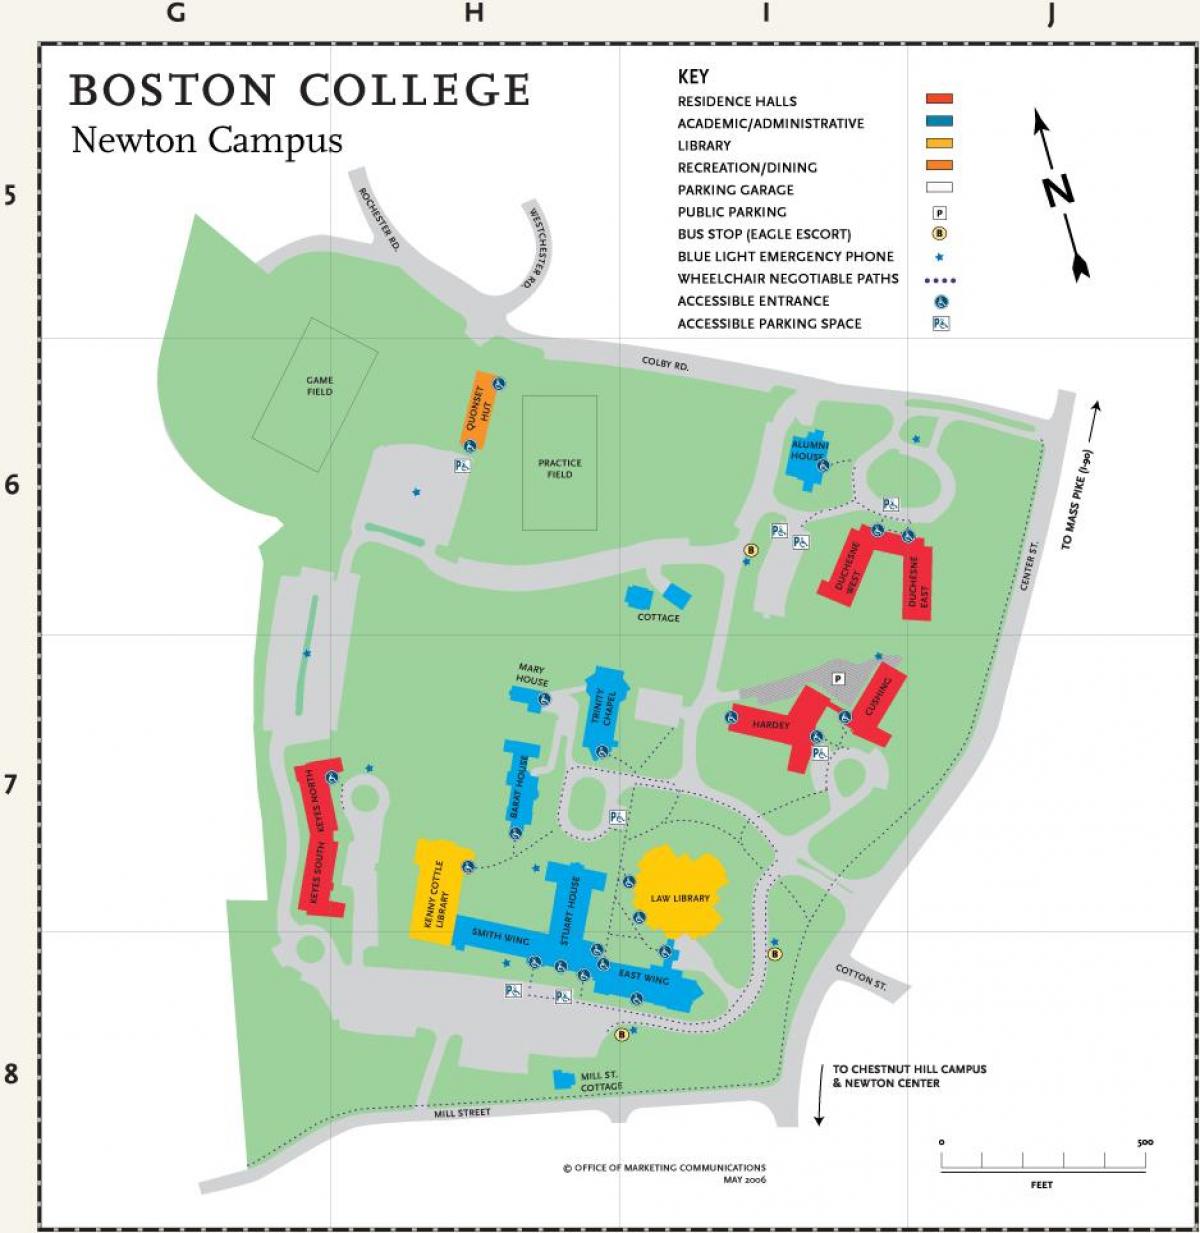 χάρτης του Boston college